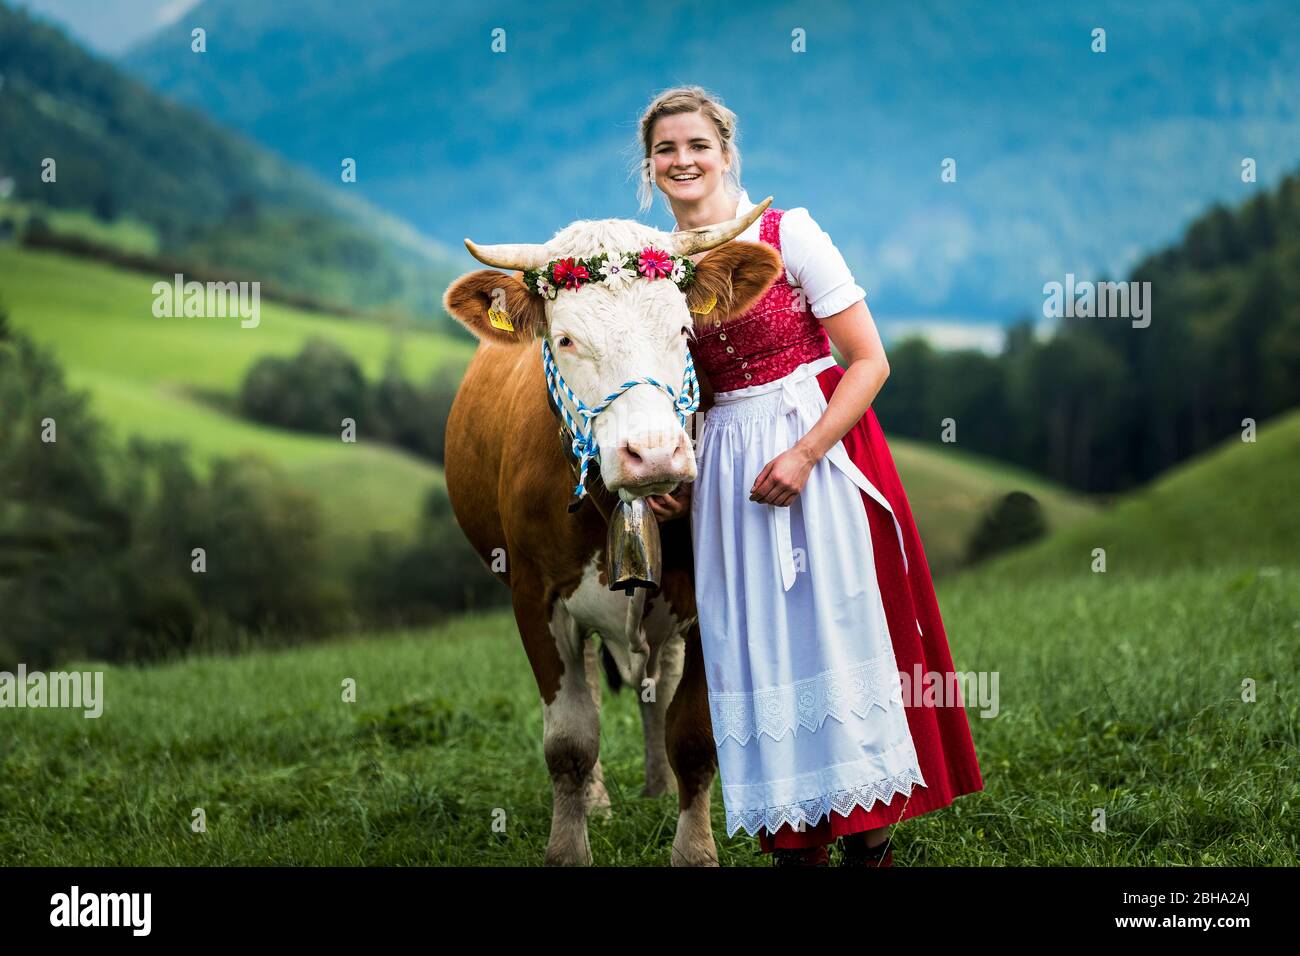 Traditionelle Almabtrieb (Rückkehr von Rindern von den Almen ins Tal im Herbst), Frau im Dirndl-Kleid mit geschmückter Kuh Stockfoto